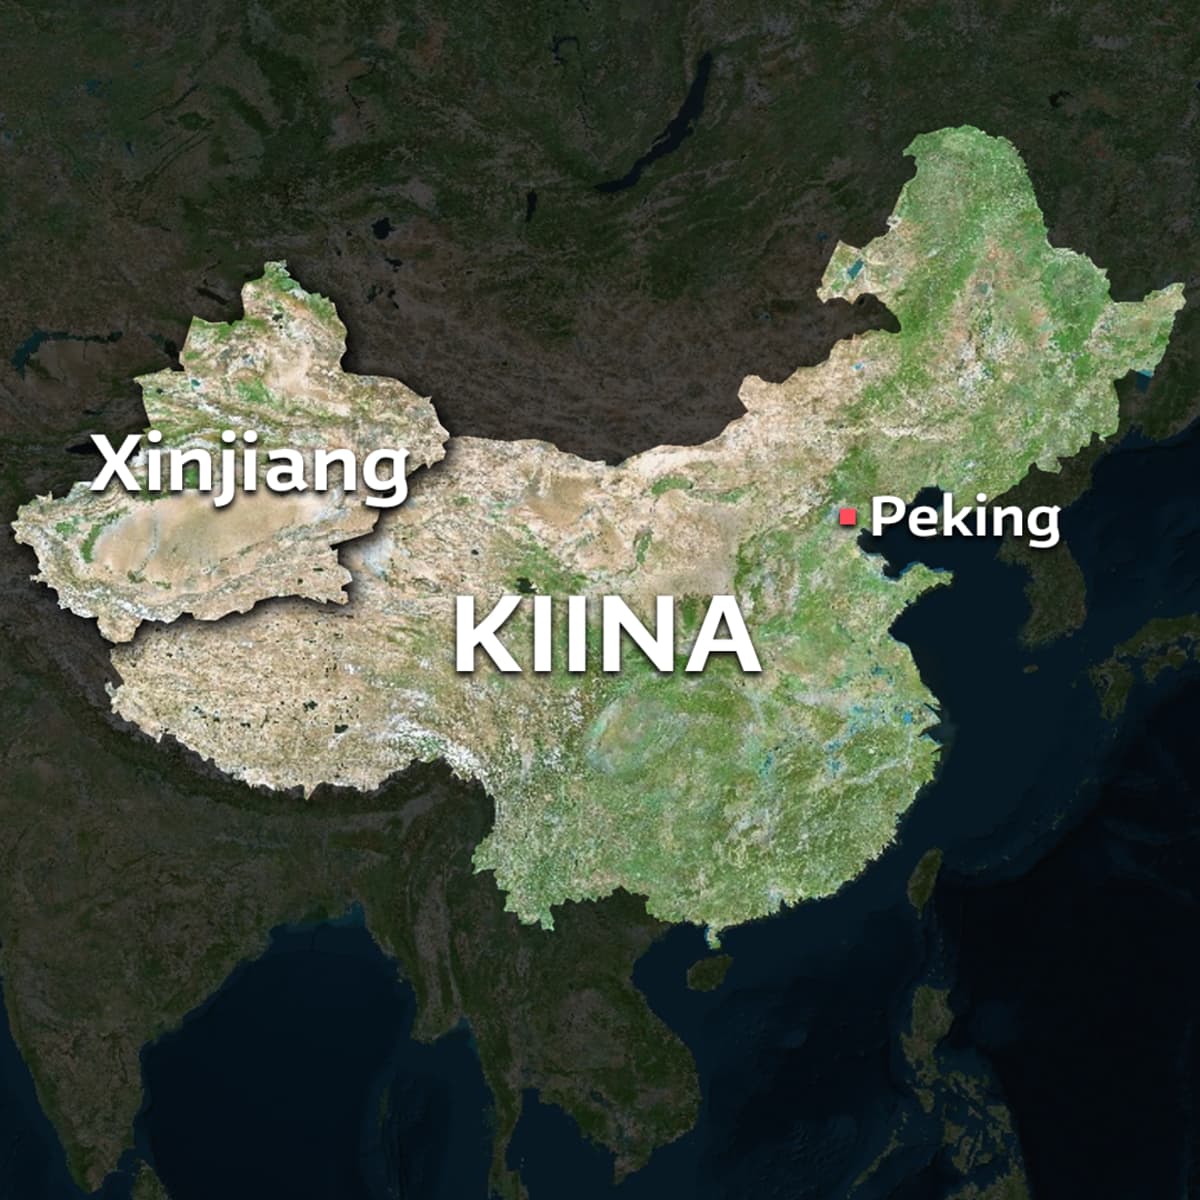 Kiinan kartta. Korostettuna Xinjiangin maakunta.